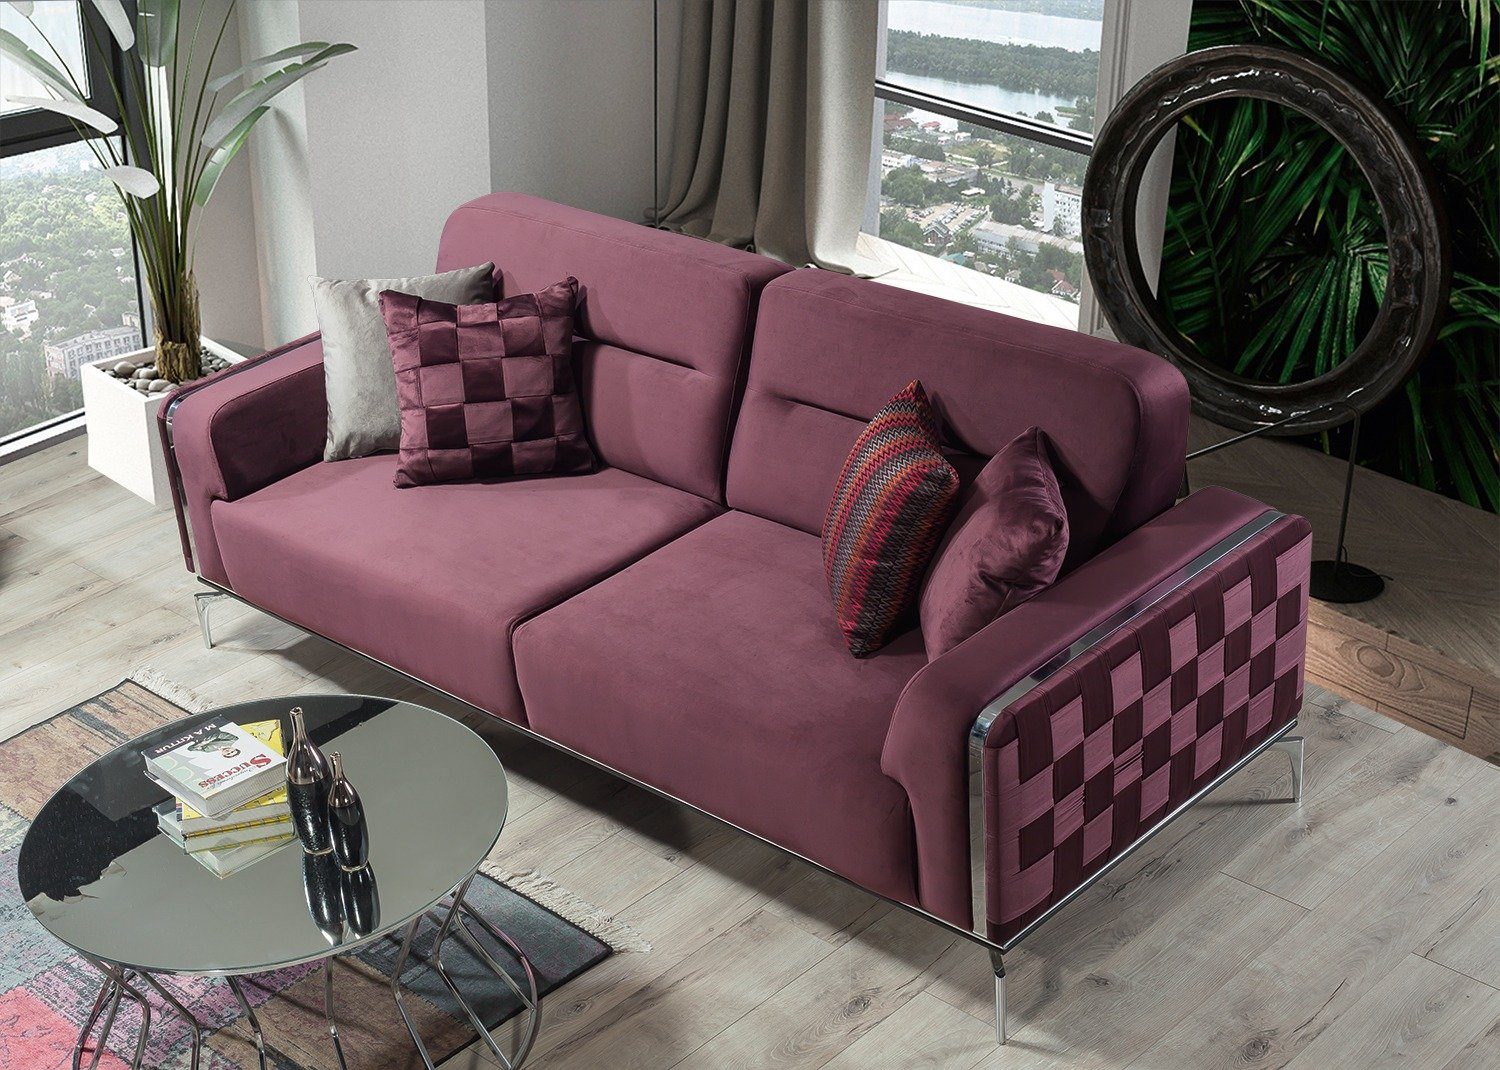 Villa Möbel Sofa Check, 1 Stk. 2-Sitzer, Quality Made in Turkey, pflegeleichter Mikrofaserstoff, Metallfüße Violett